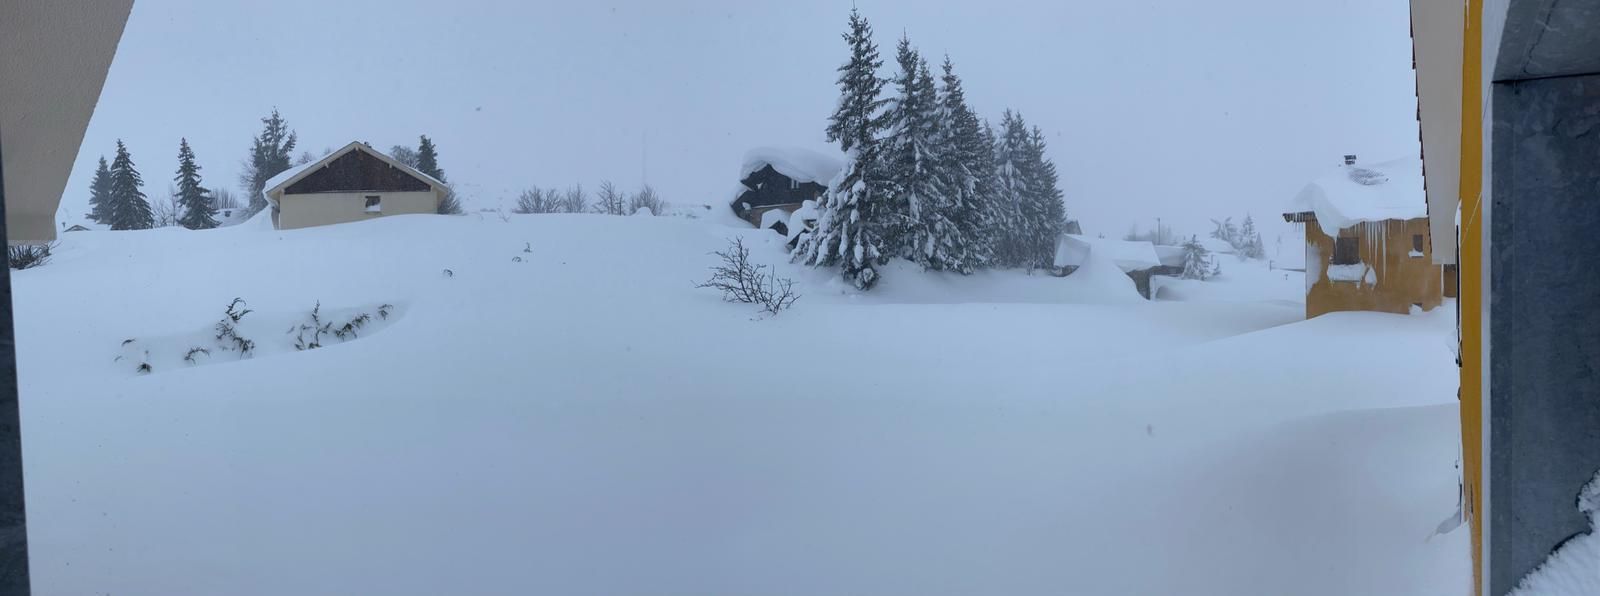 Más de dos metros de nieve: así se enfrentan los vecinos de Aller al temporal